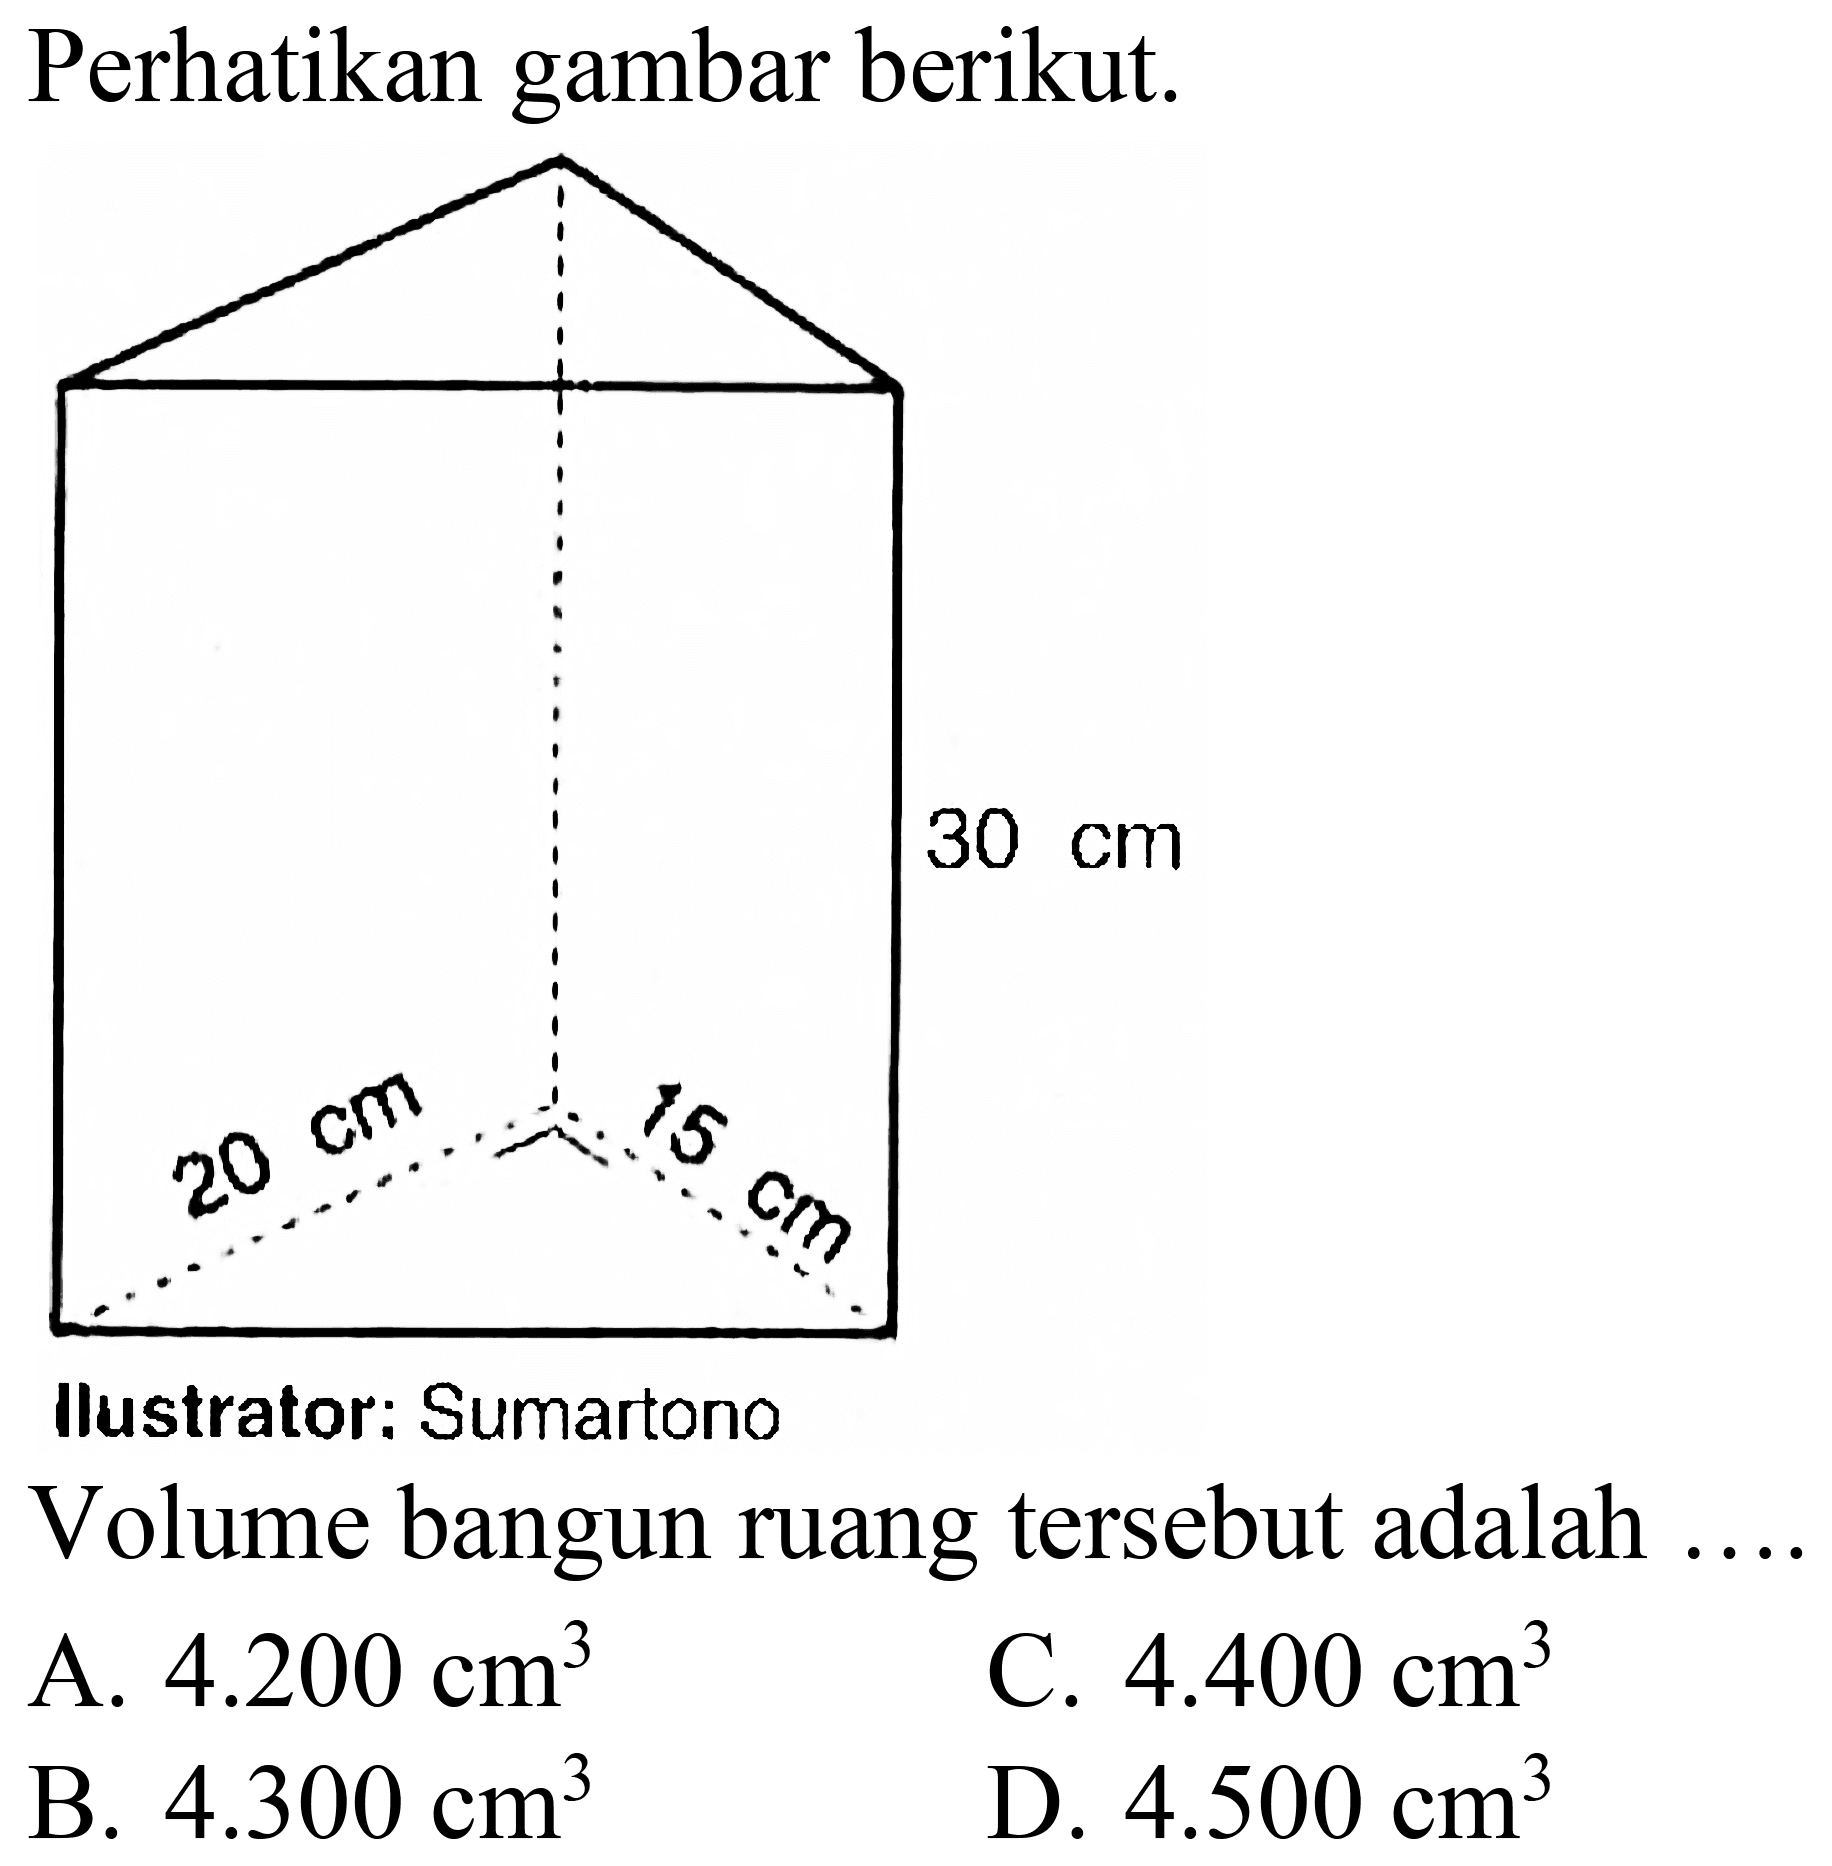 Perhatikan gambar berikut.
llustrator: Sumartono
Volume bangun ruang tersebut adalah
A.  4.200 cm^3 
c.  4.400 cm^3 
B.  4.300 cm^3 
D.  4.500 cm^3 